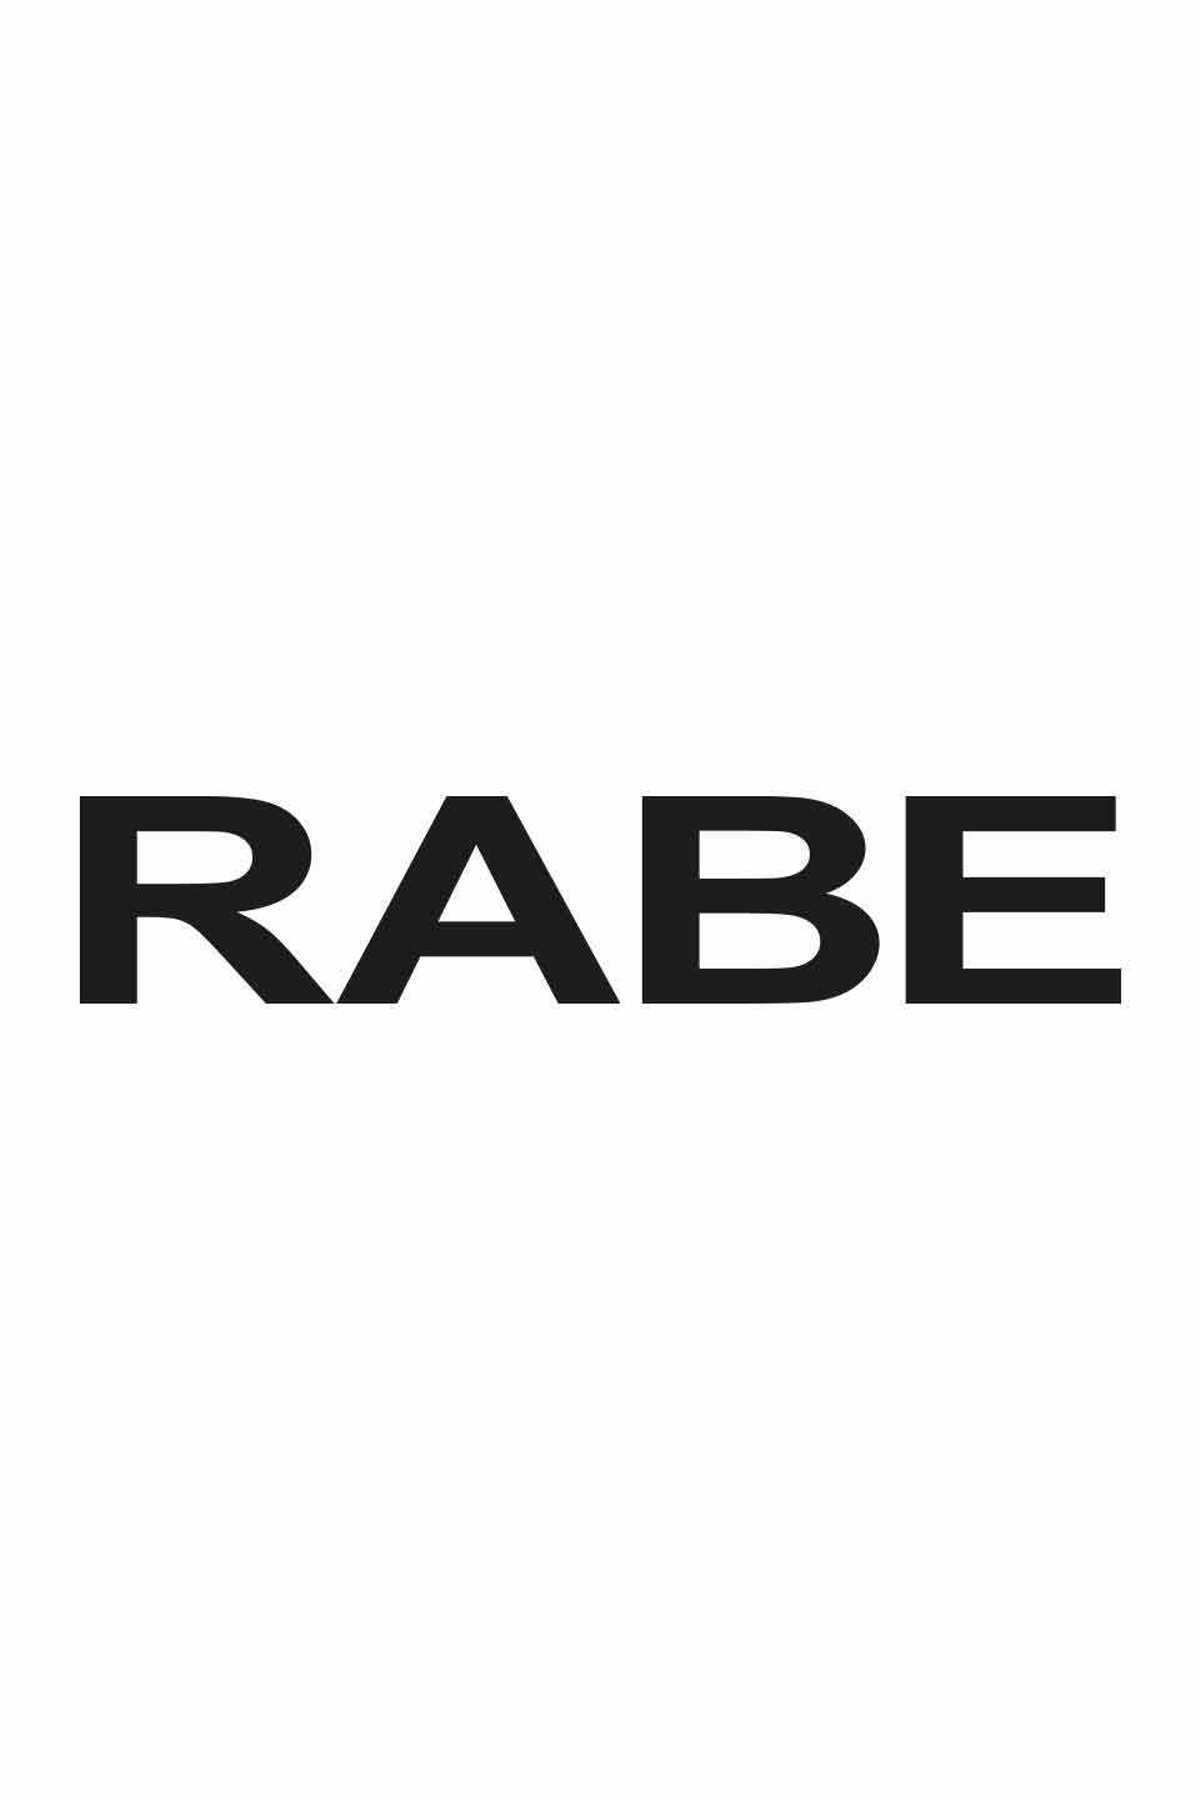 Rabe | Mode + Schuh - Markenmode Kämpf und Schuhe